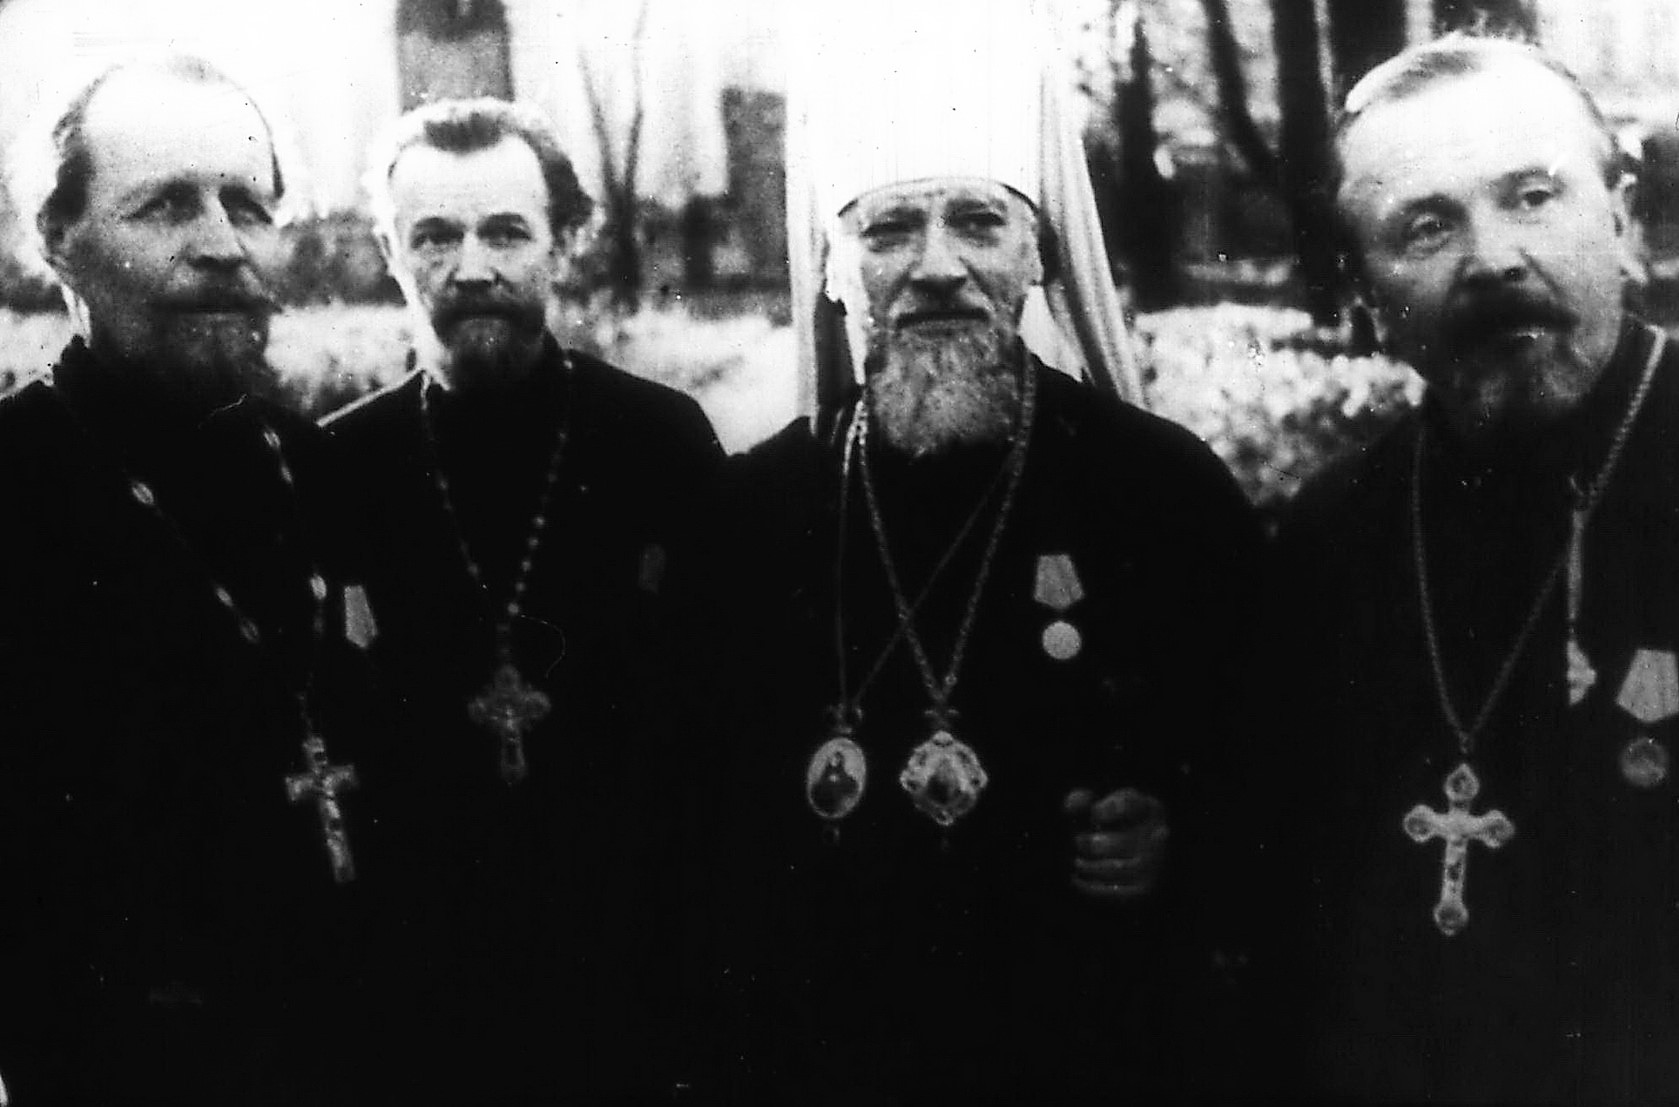 1 русские православные святые